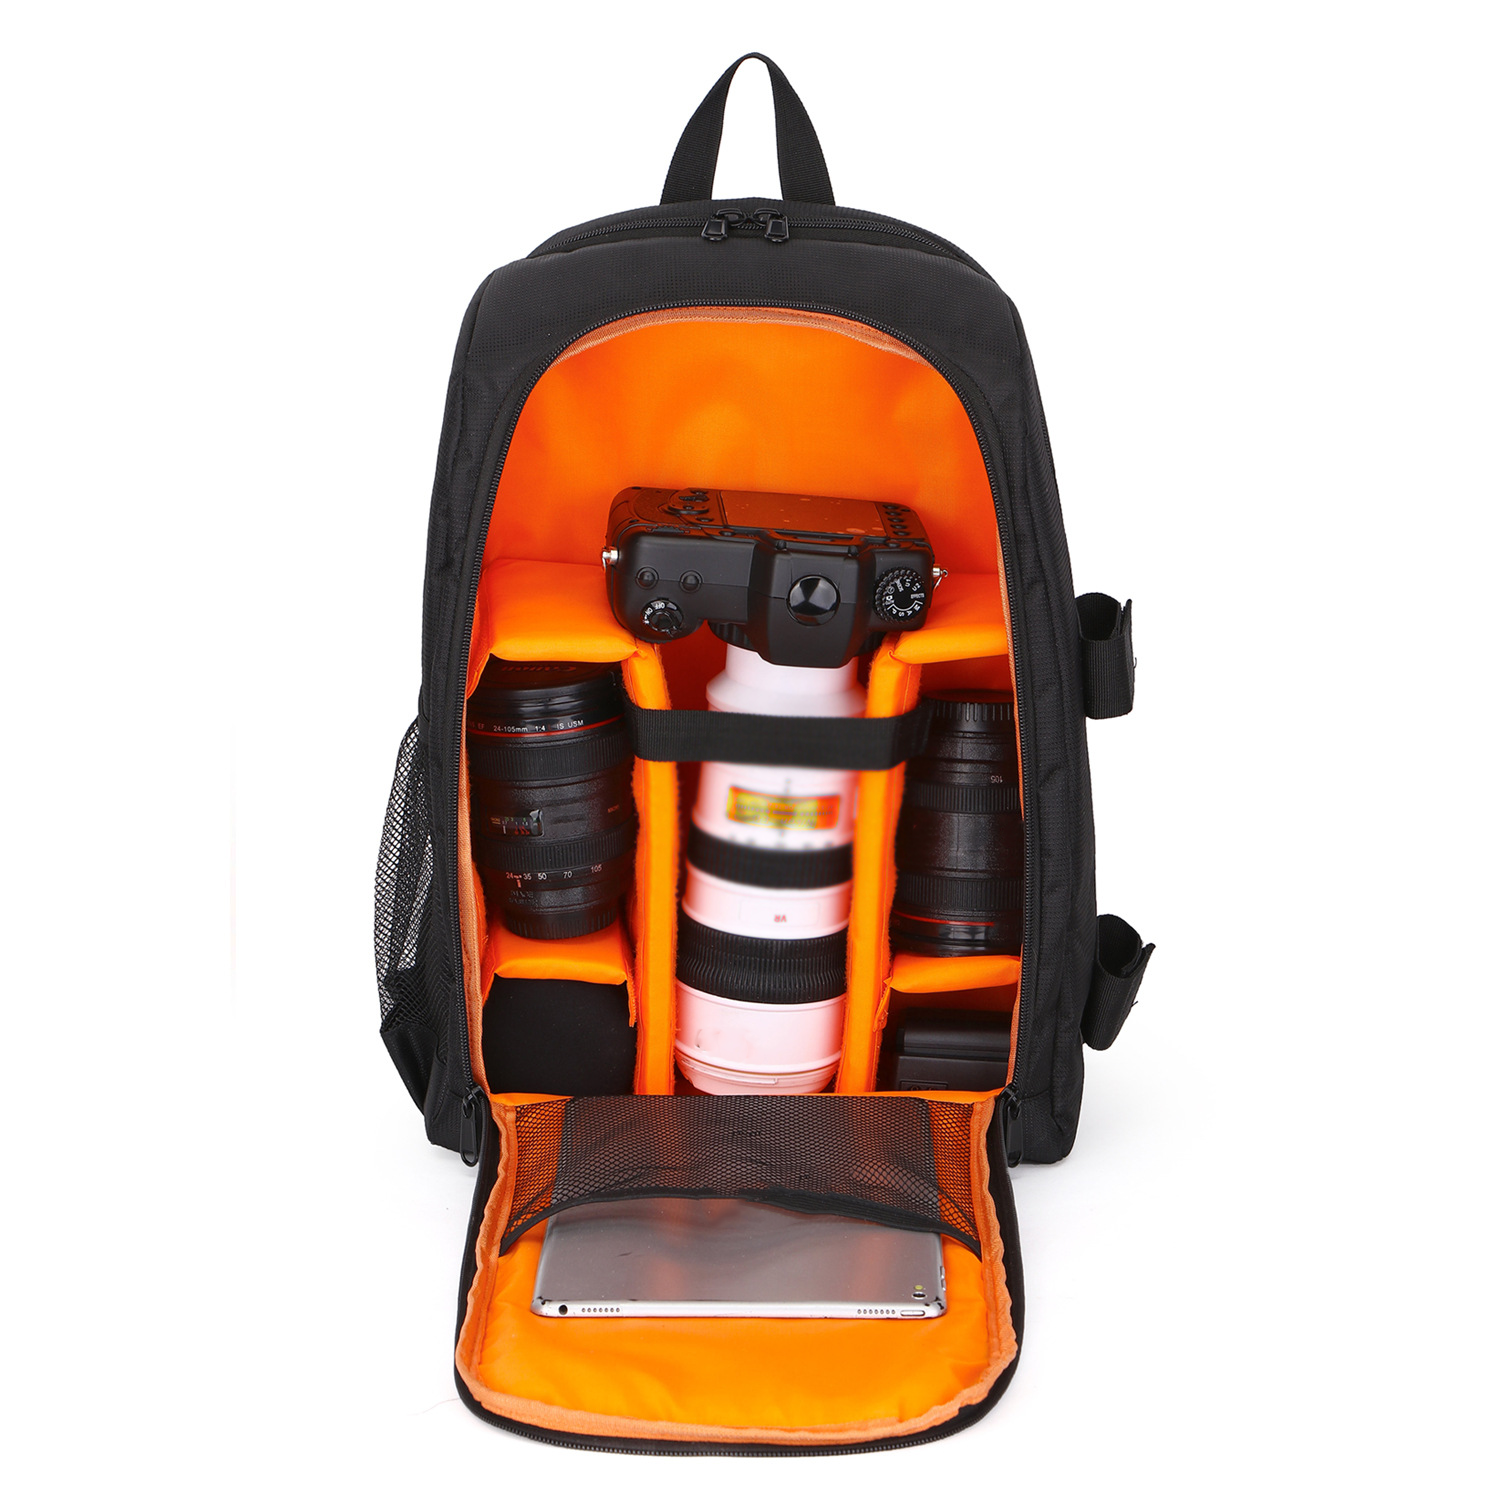 SYNTEK SLR Digitalkamera Tasche Schultern tragen Tasche wasserdicht Kameratasche, Rucksäcke orange Outdoor-Fotografie